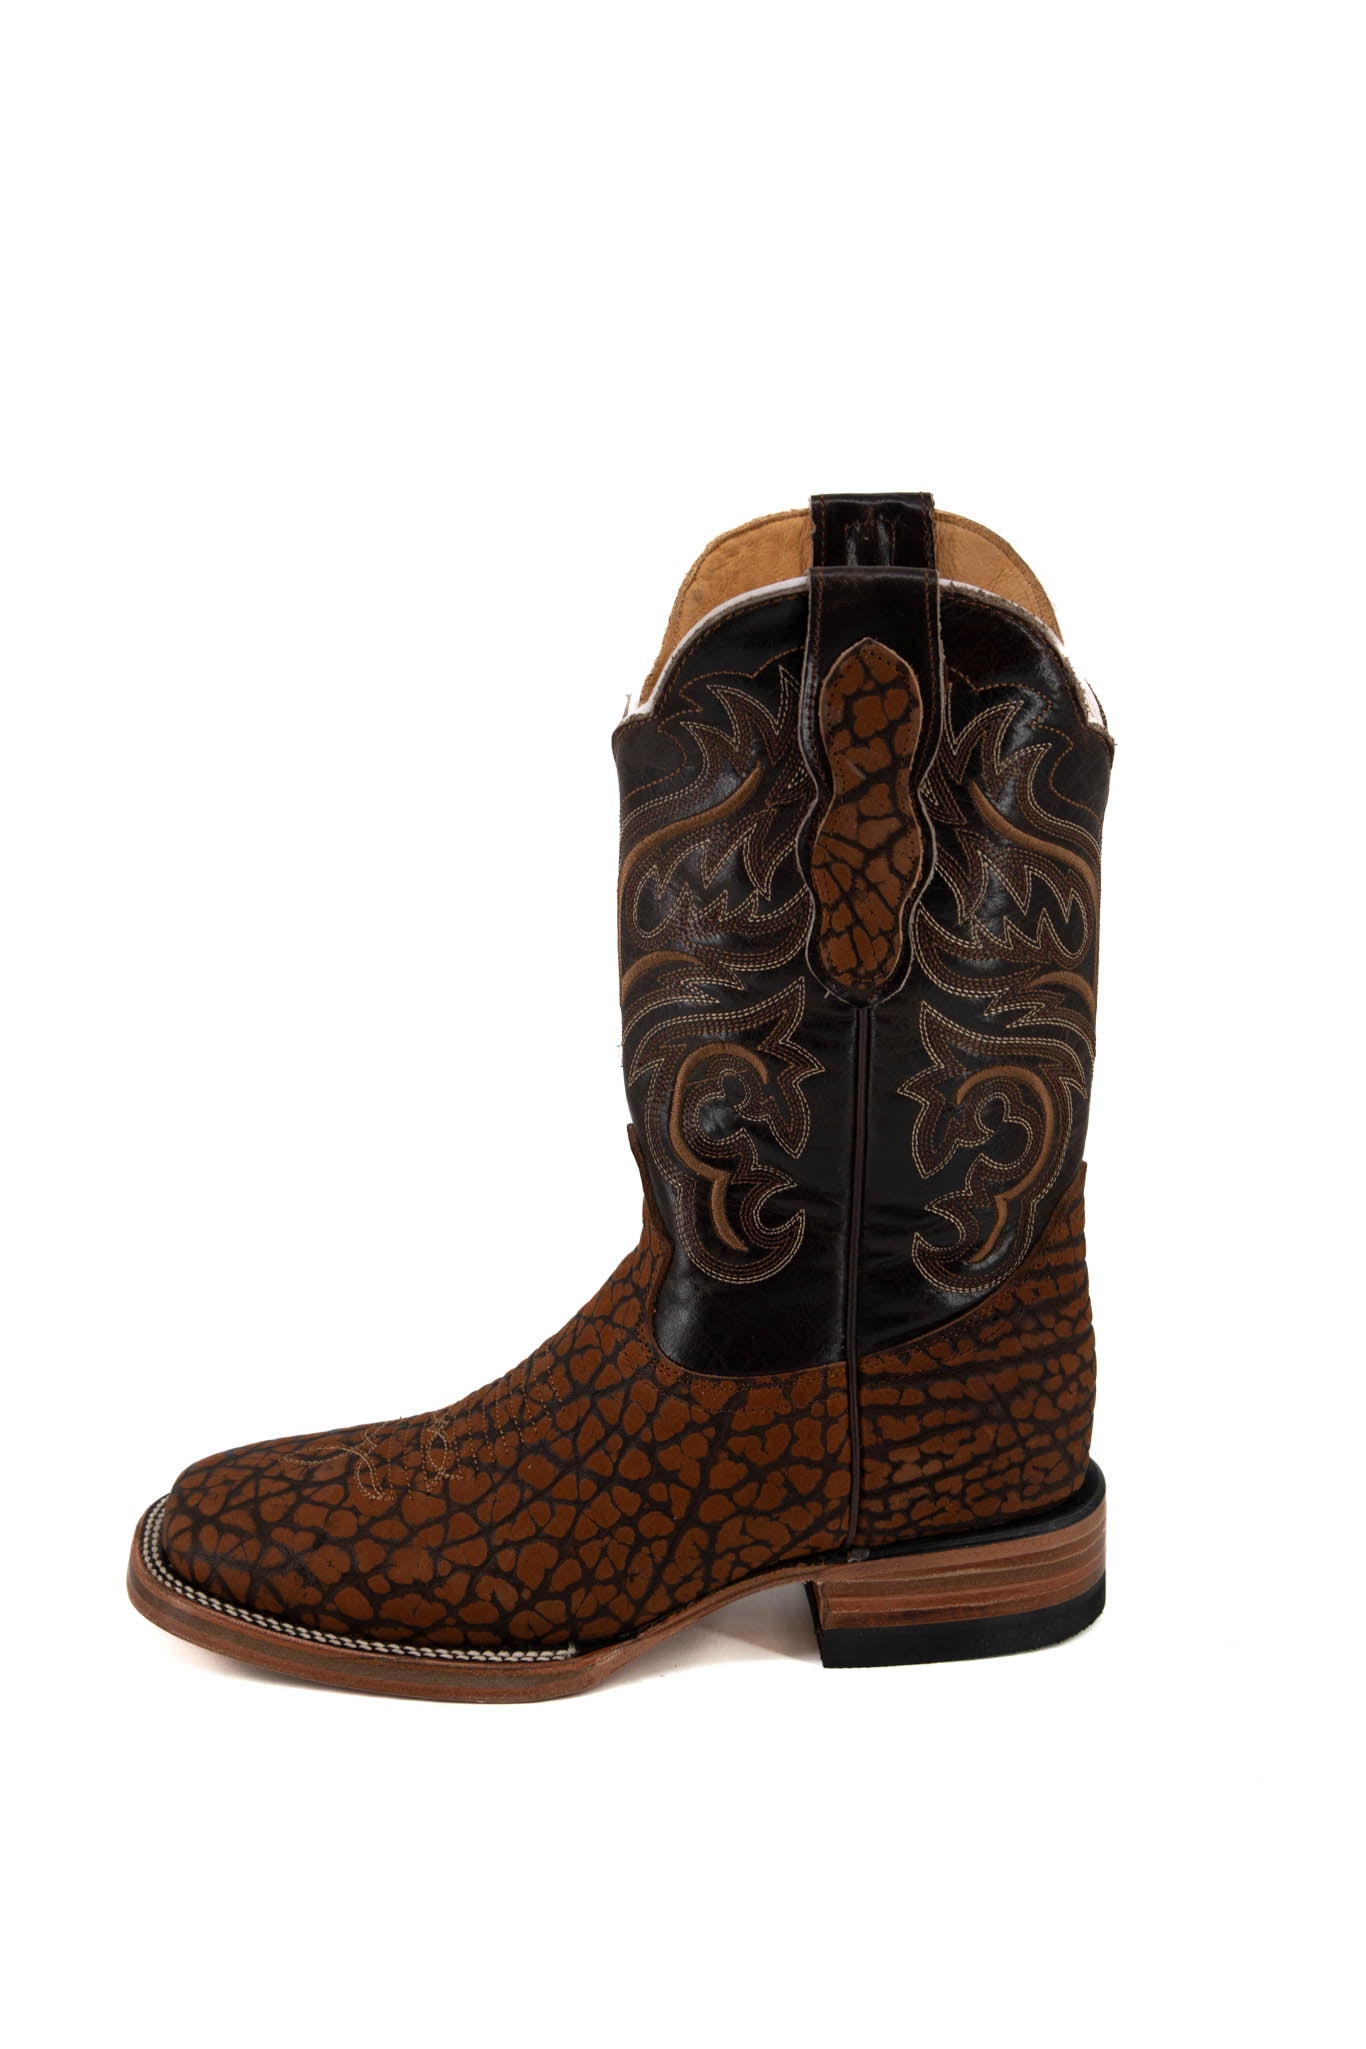 Est. 400 Cuello de Toro Cowboy Boot